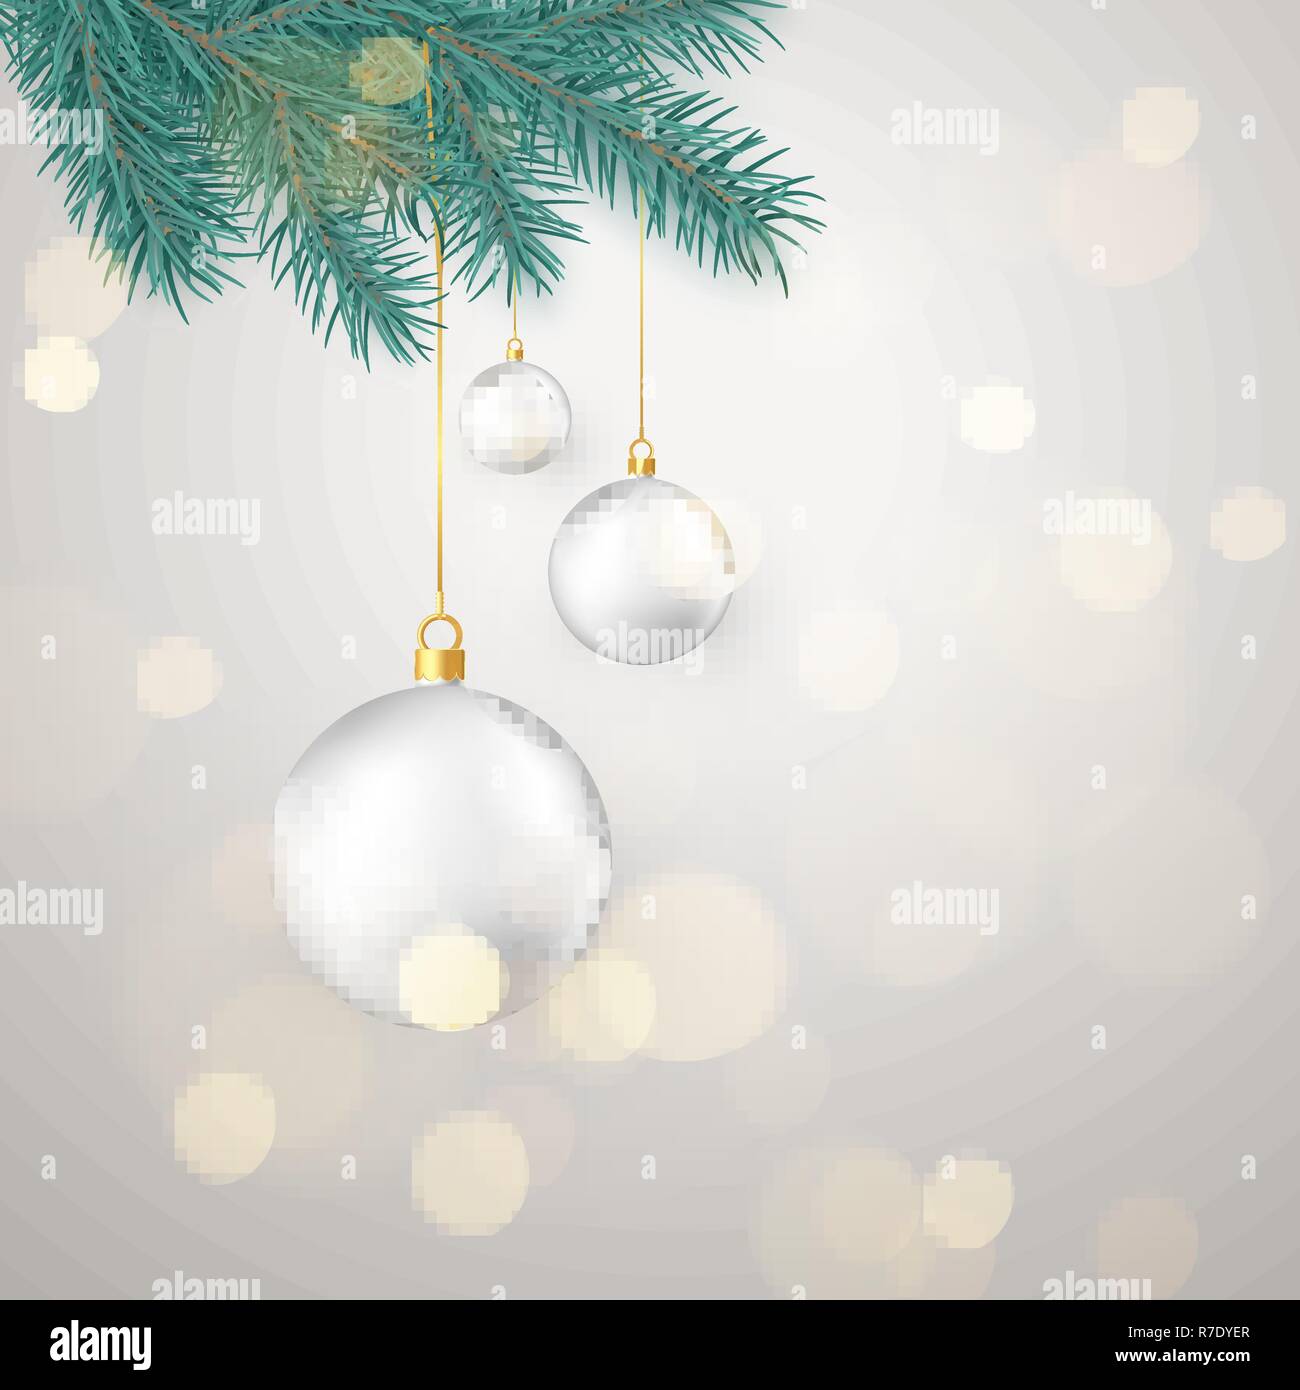 Weiße Weihnachten Kugeln hängen auf Neues Jahr Baumstrukturzweig. Winter Urlaub Dekoration Element. Vector Illustration auf weißem Hintergrund Stock Vektor